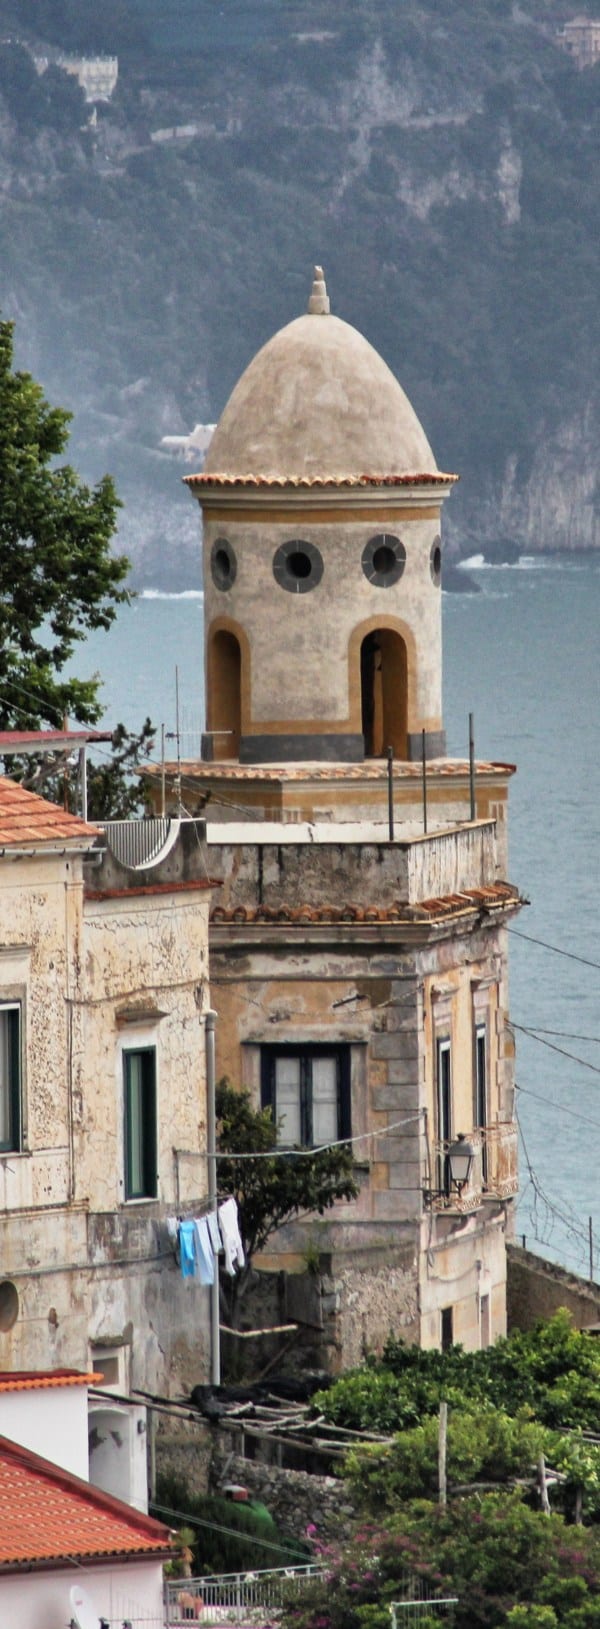 Caminhadas na Costa Amalfitana Torres pitorescas por toda parte